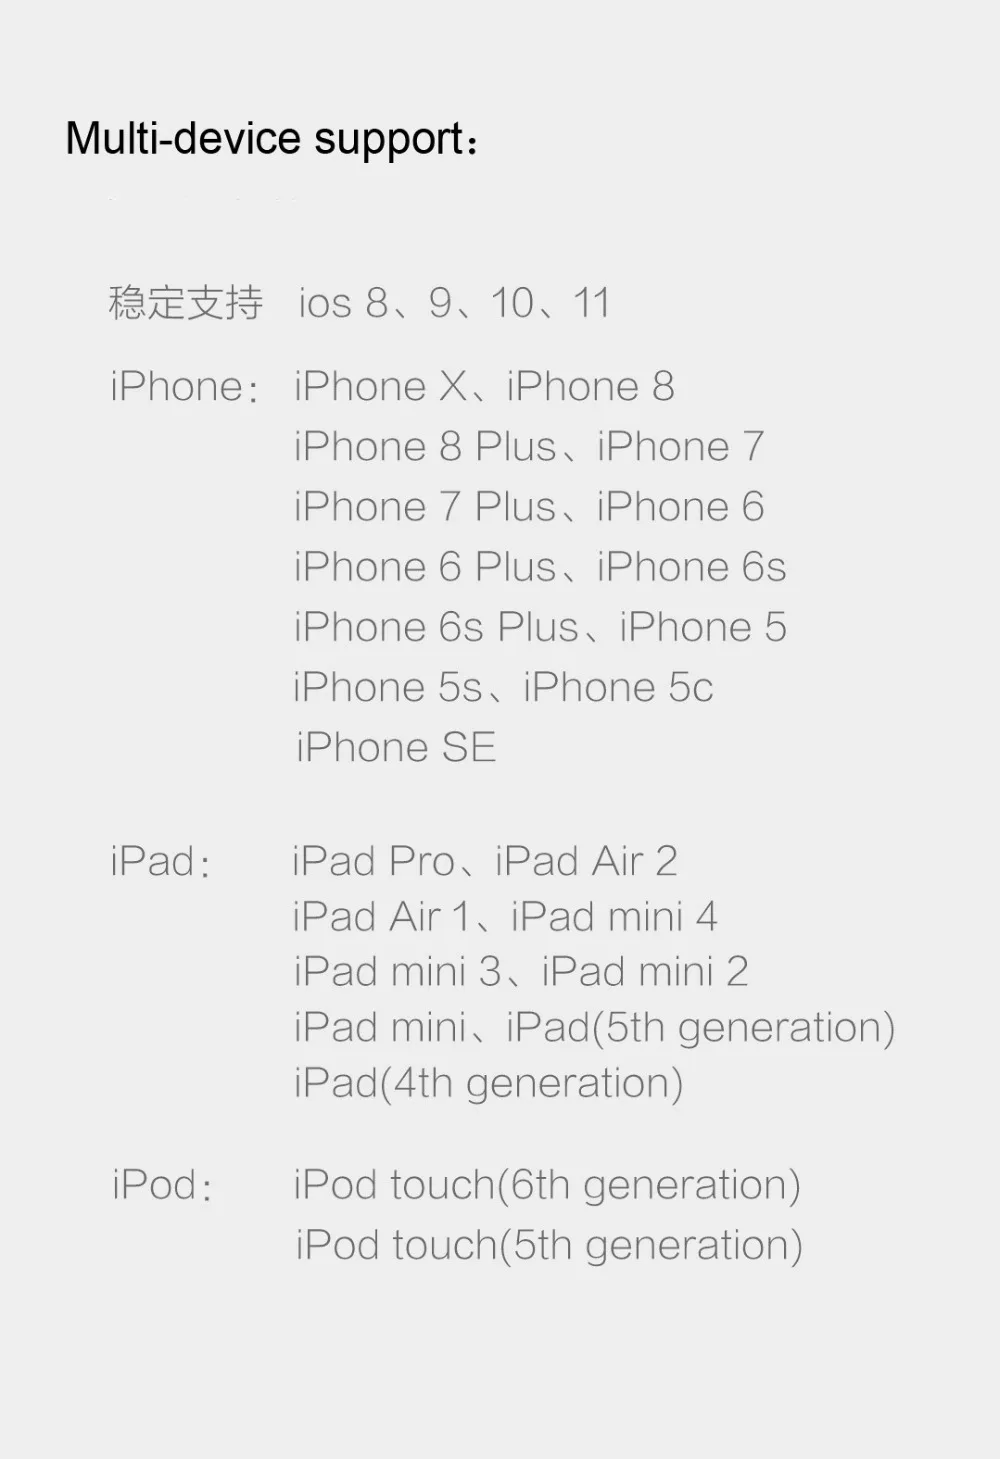 Xiaomi Mijia Guildford телефон зарядное устройство кабель для Apple iPhone X быстрое зарядное устройство кабель для iPad iPod 1 метр